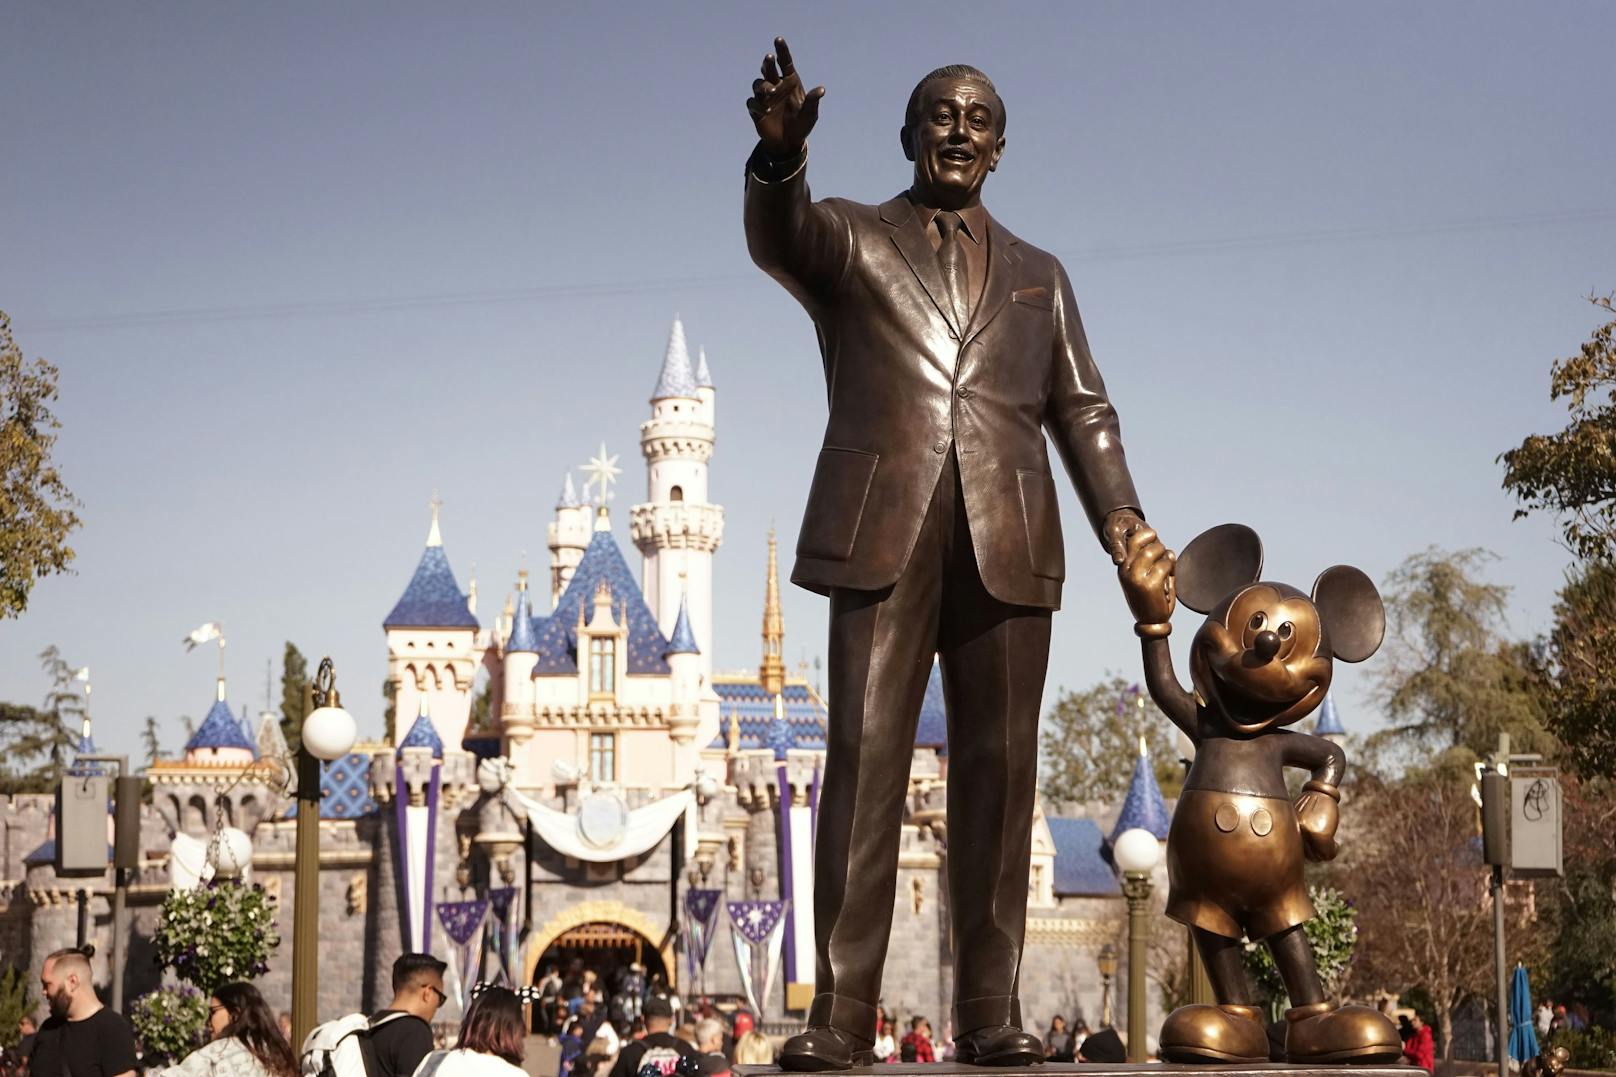 Du kannst jetzt in Walt Disneys Haus wohnen – aber das hat seinen Preis. 